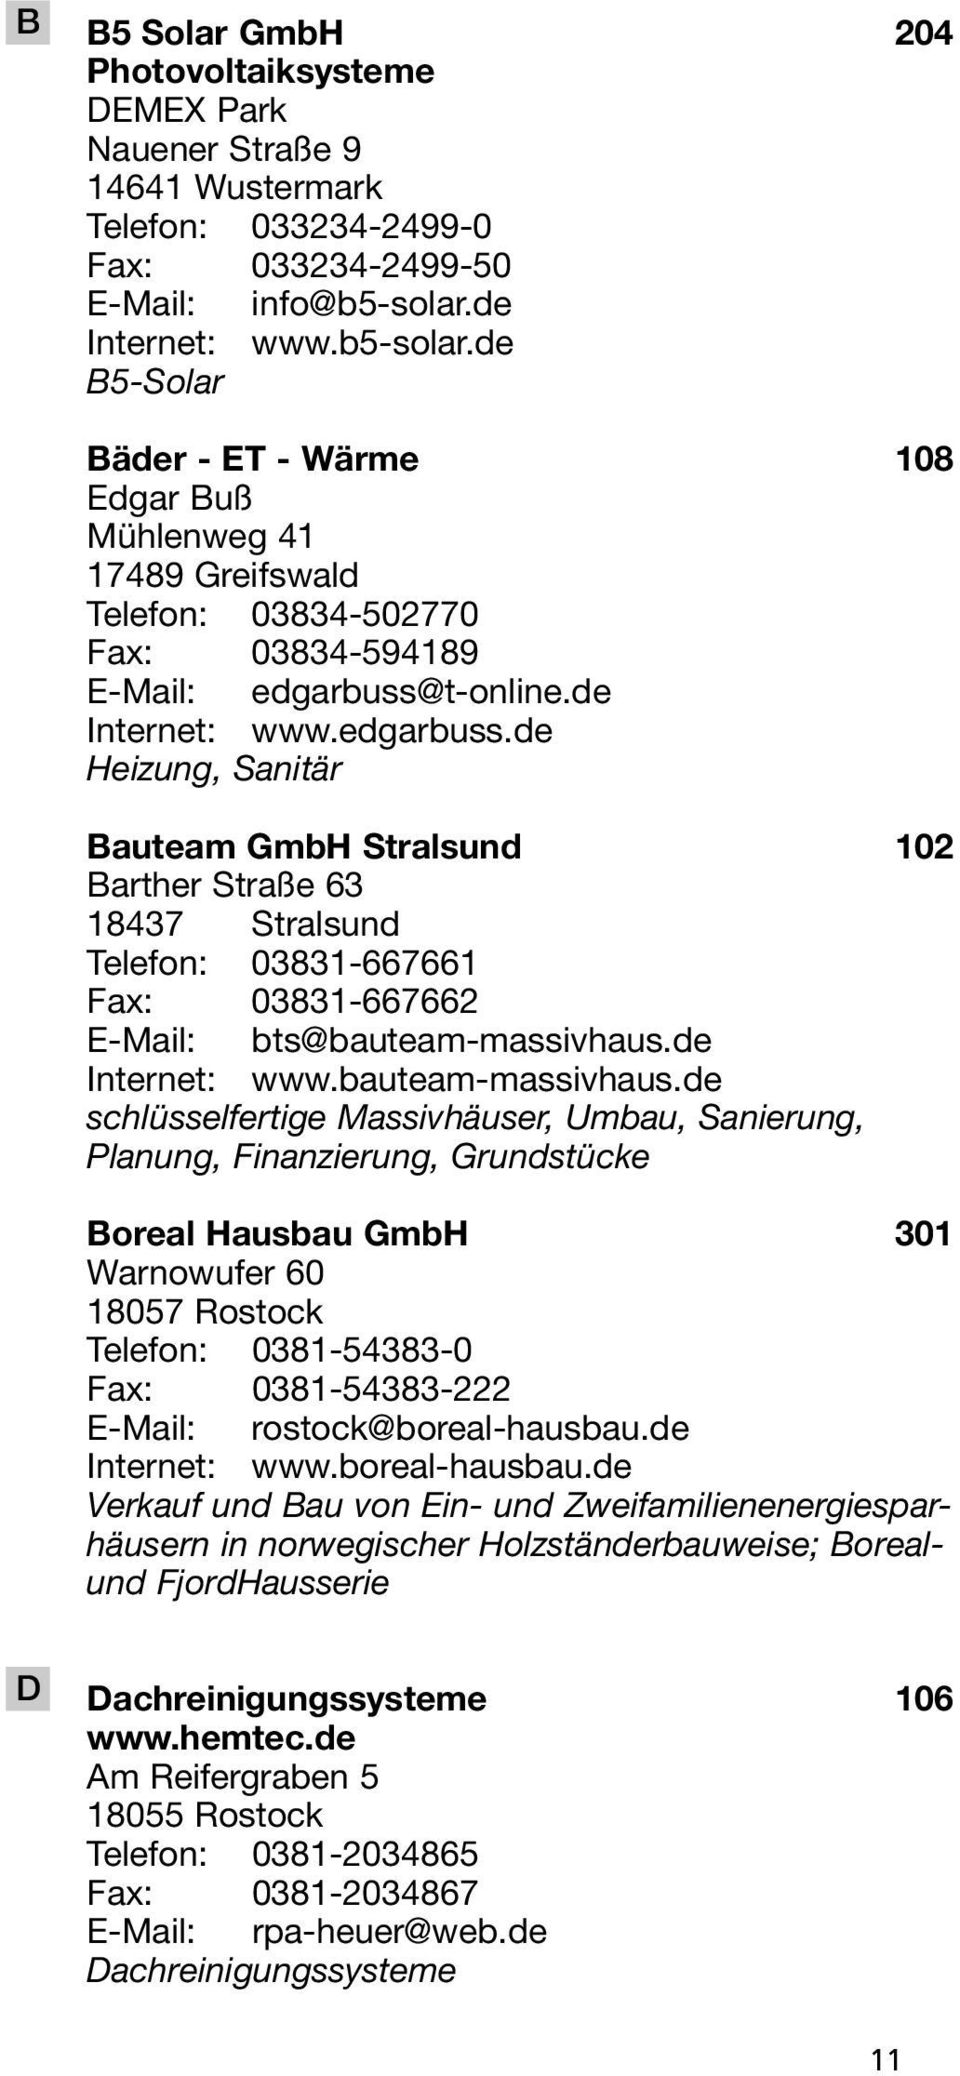 t-online.de Internet: www.edgarbuss.de Heizung, Sanitär Bauteam GmbH Stralsund 102 Barther Straße 63 18437 Stralsund Telefon: 03831-667661 Fax: 03831-667662 E-Mail: bts@bauteam-massivhaus.